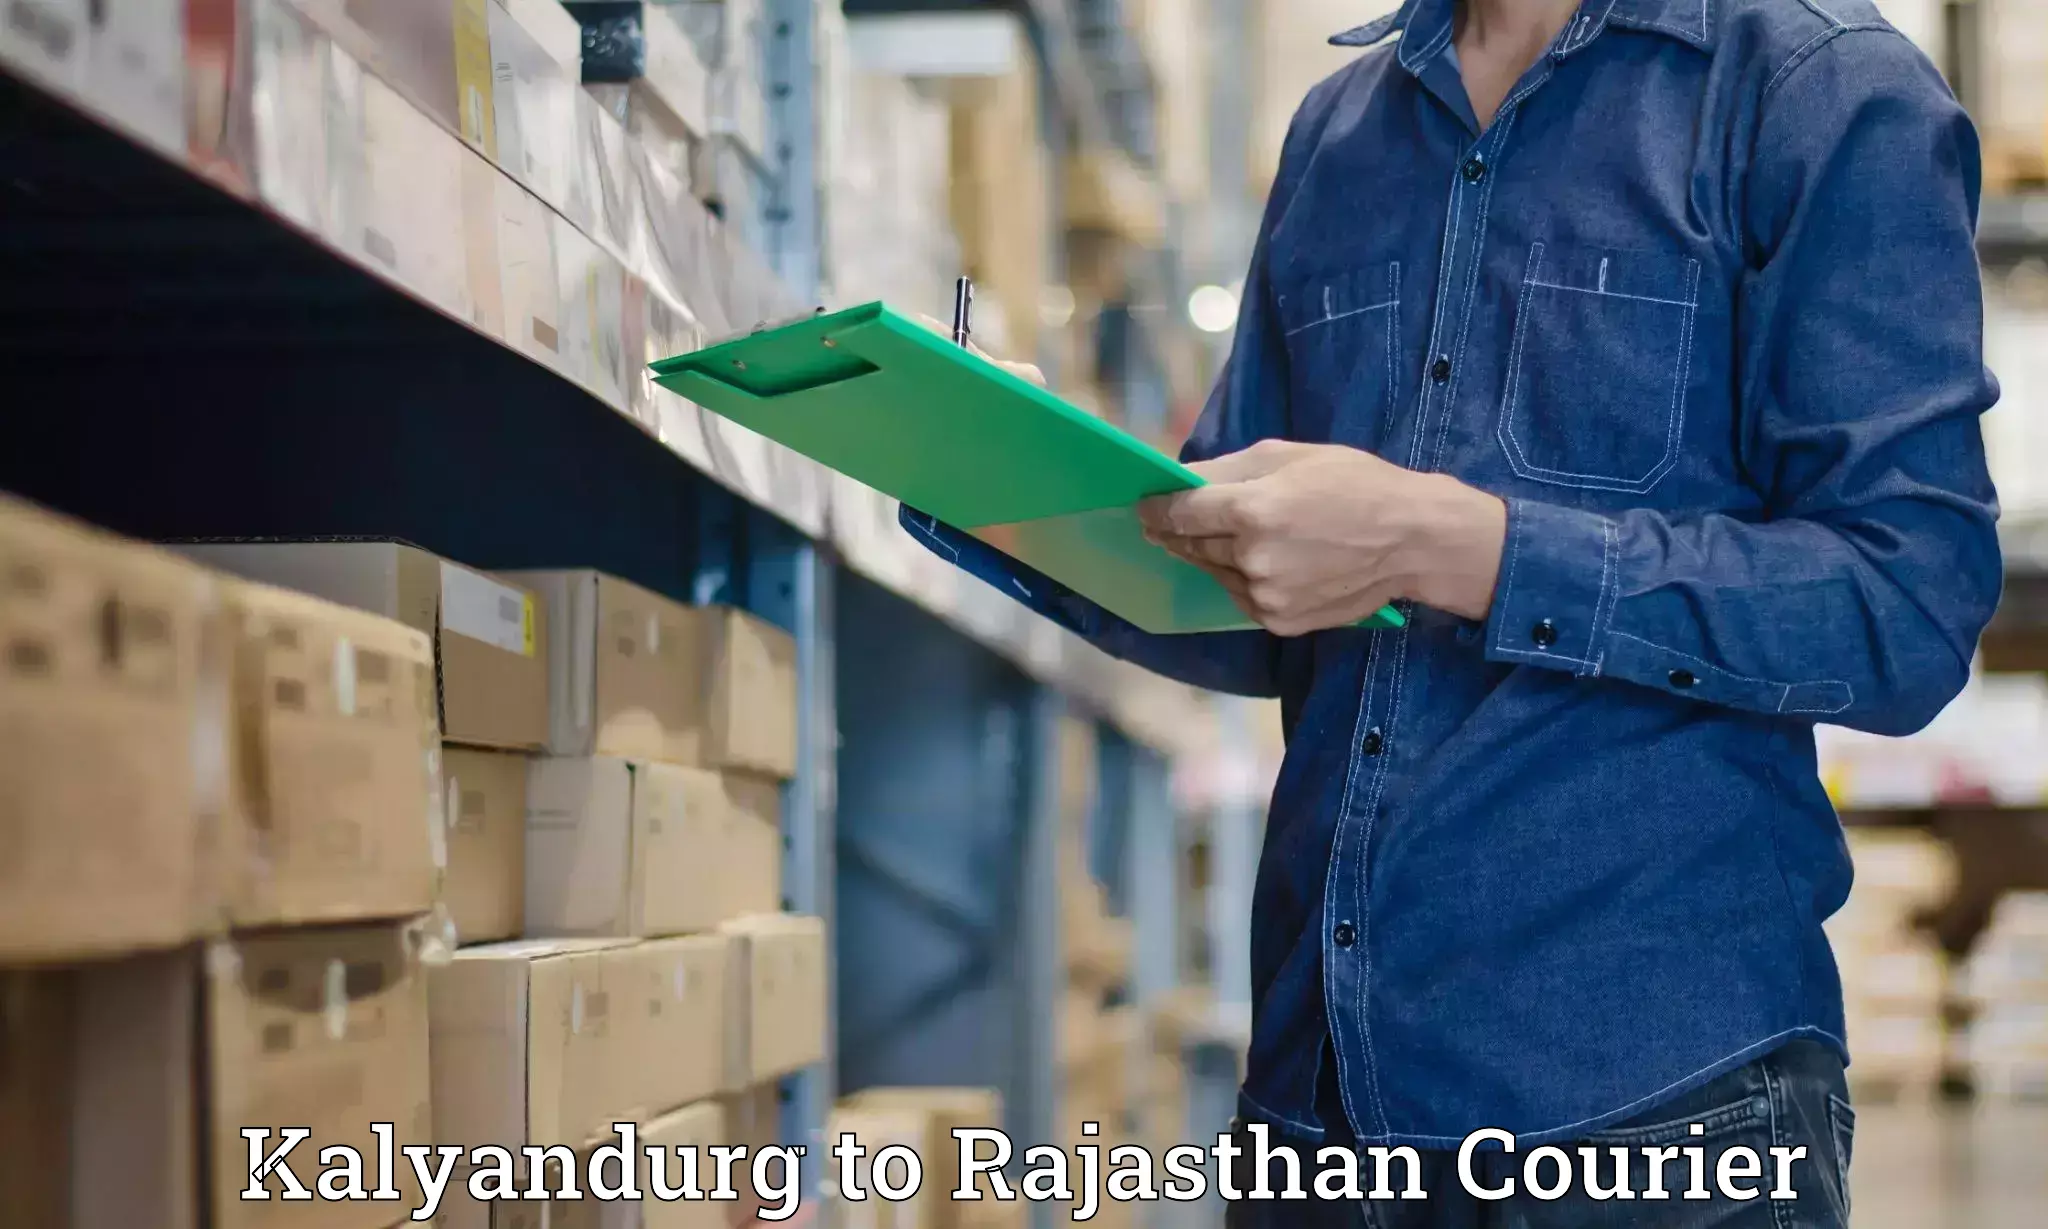 International courier networks Kalyandurg to Badnor